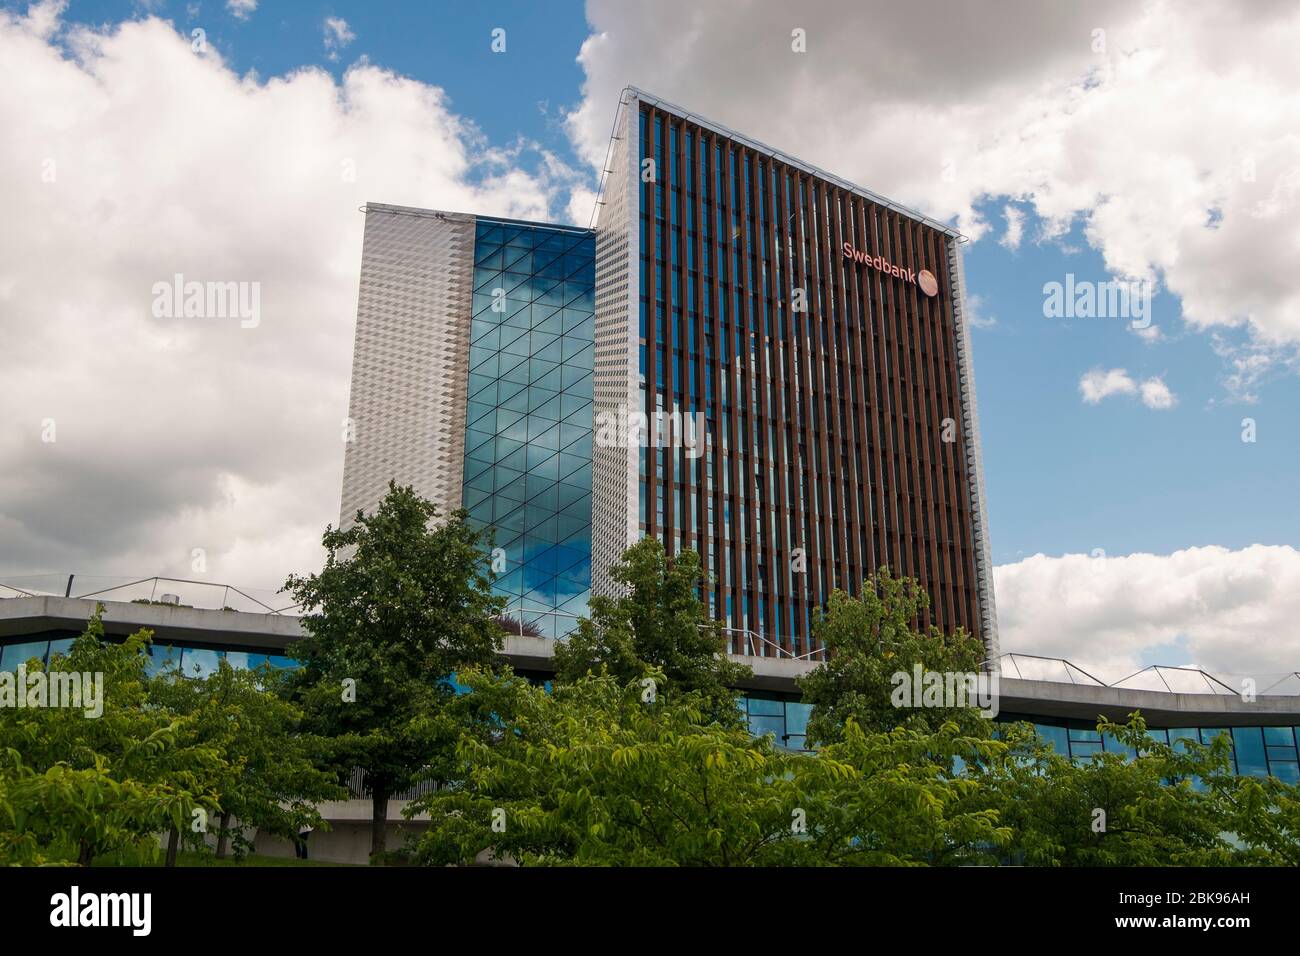 Le design moderne et de pointe du bâtiment Swedbank dans le quartier des affaires. À Vilnius, Lituanie. Conçu par les architectes Audrius Ambrasas. Banque D'Images